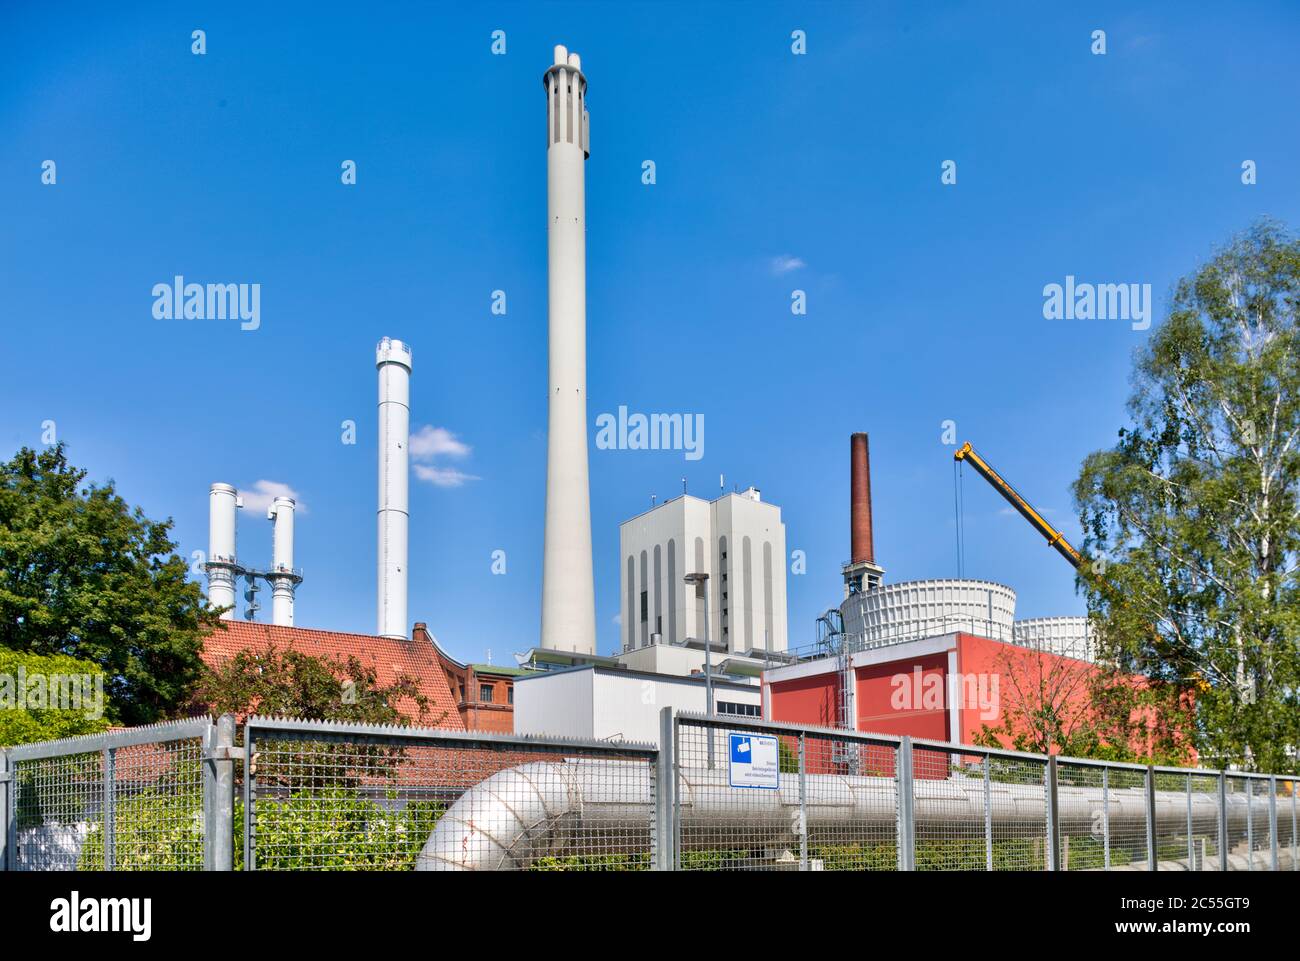 BS energia, centrale elettrica, pubblica utilità, approvvigionamento energetico, tecnologia, architettura, Braunschweig, bassa Sassonia, Germania, Europa Foto Stock